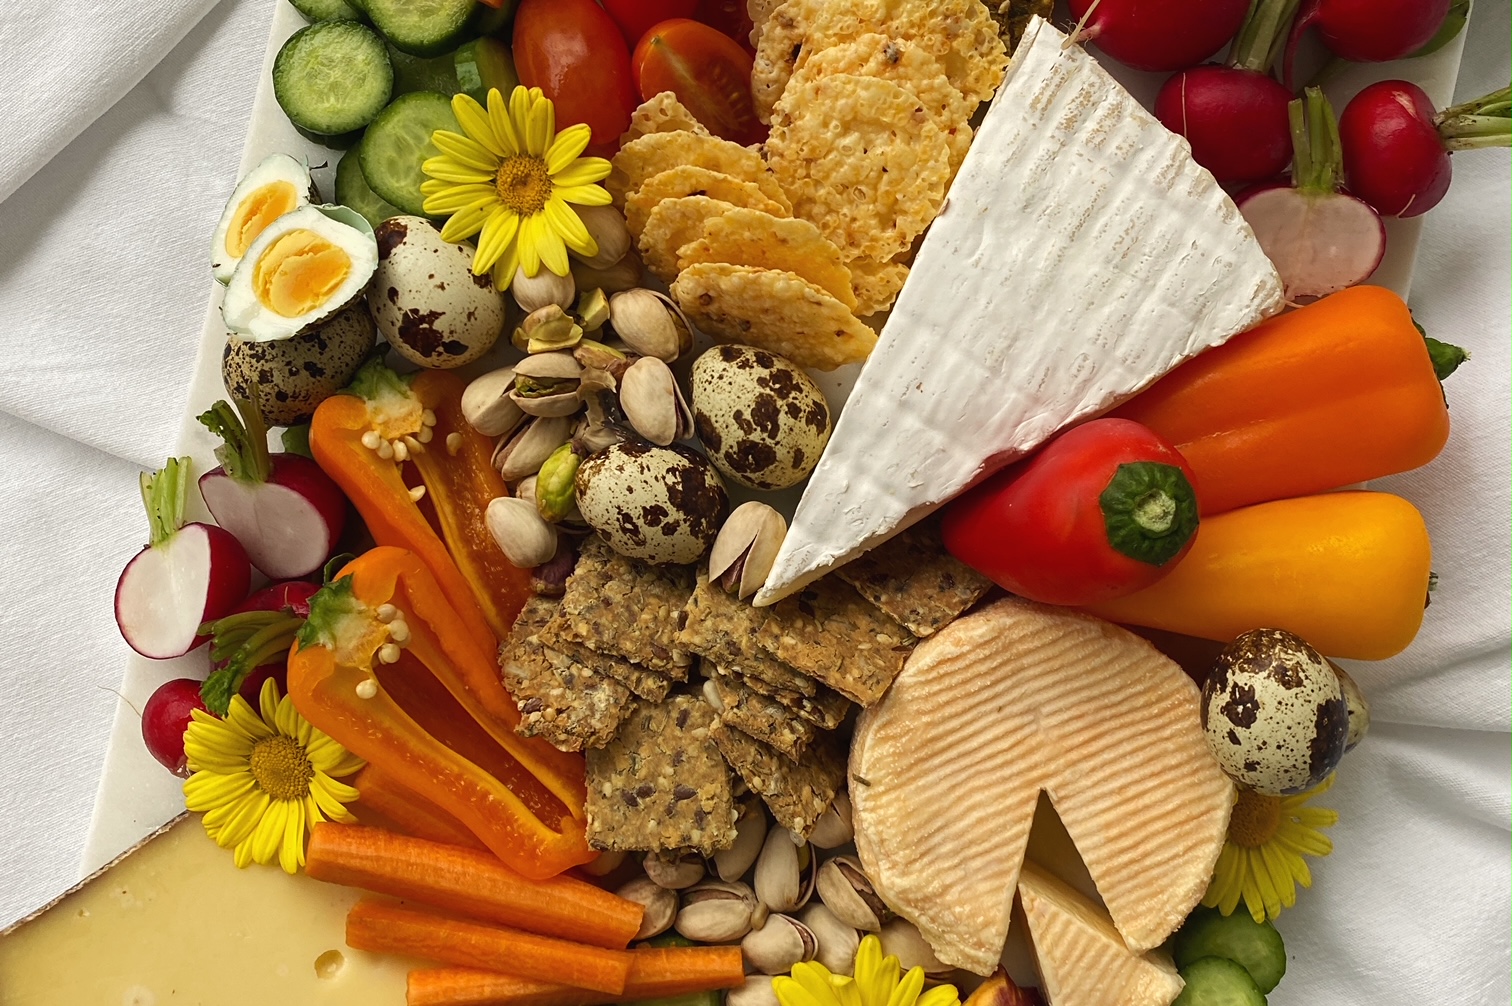 Frühlingshafte Käseplatte (Cheeseboard) von oben fotografiert auf einer wiessen Tischdecke. Der Käse wird mit buntem Gemüse, Eiern und Krackern ergänzt. Als Deko sind essbare gelbe Blüten auf dem Essen verteilt.